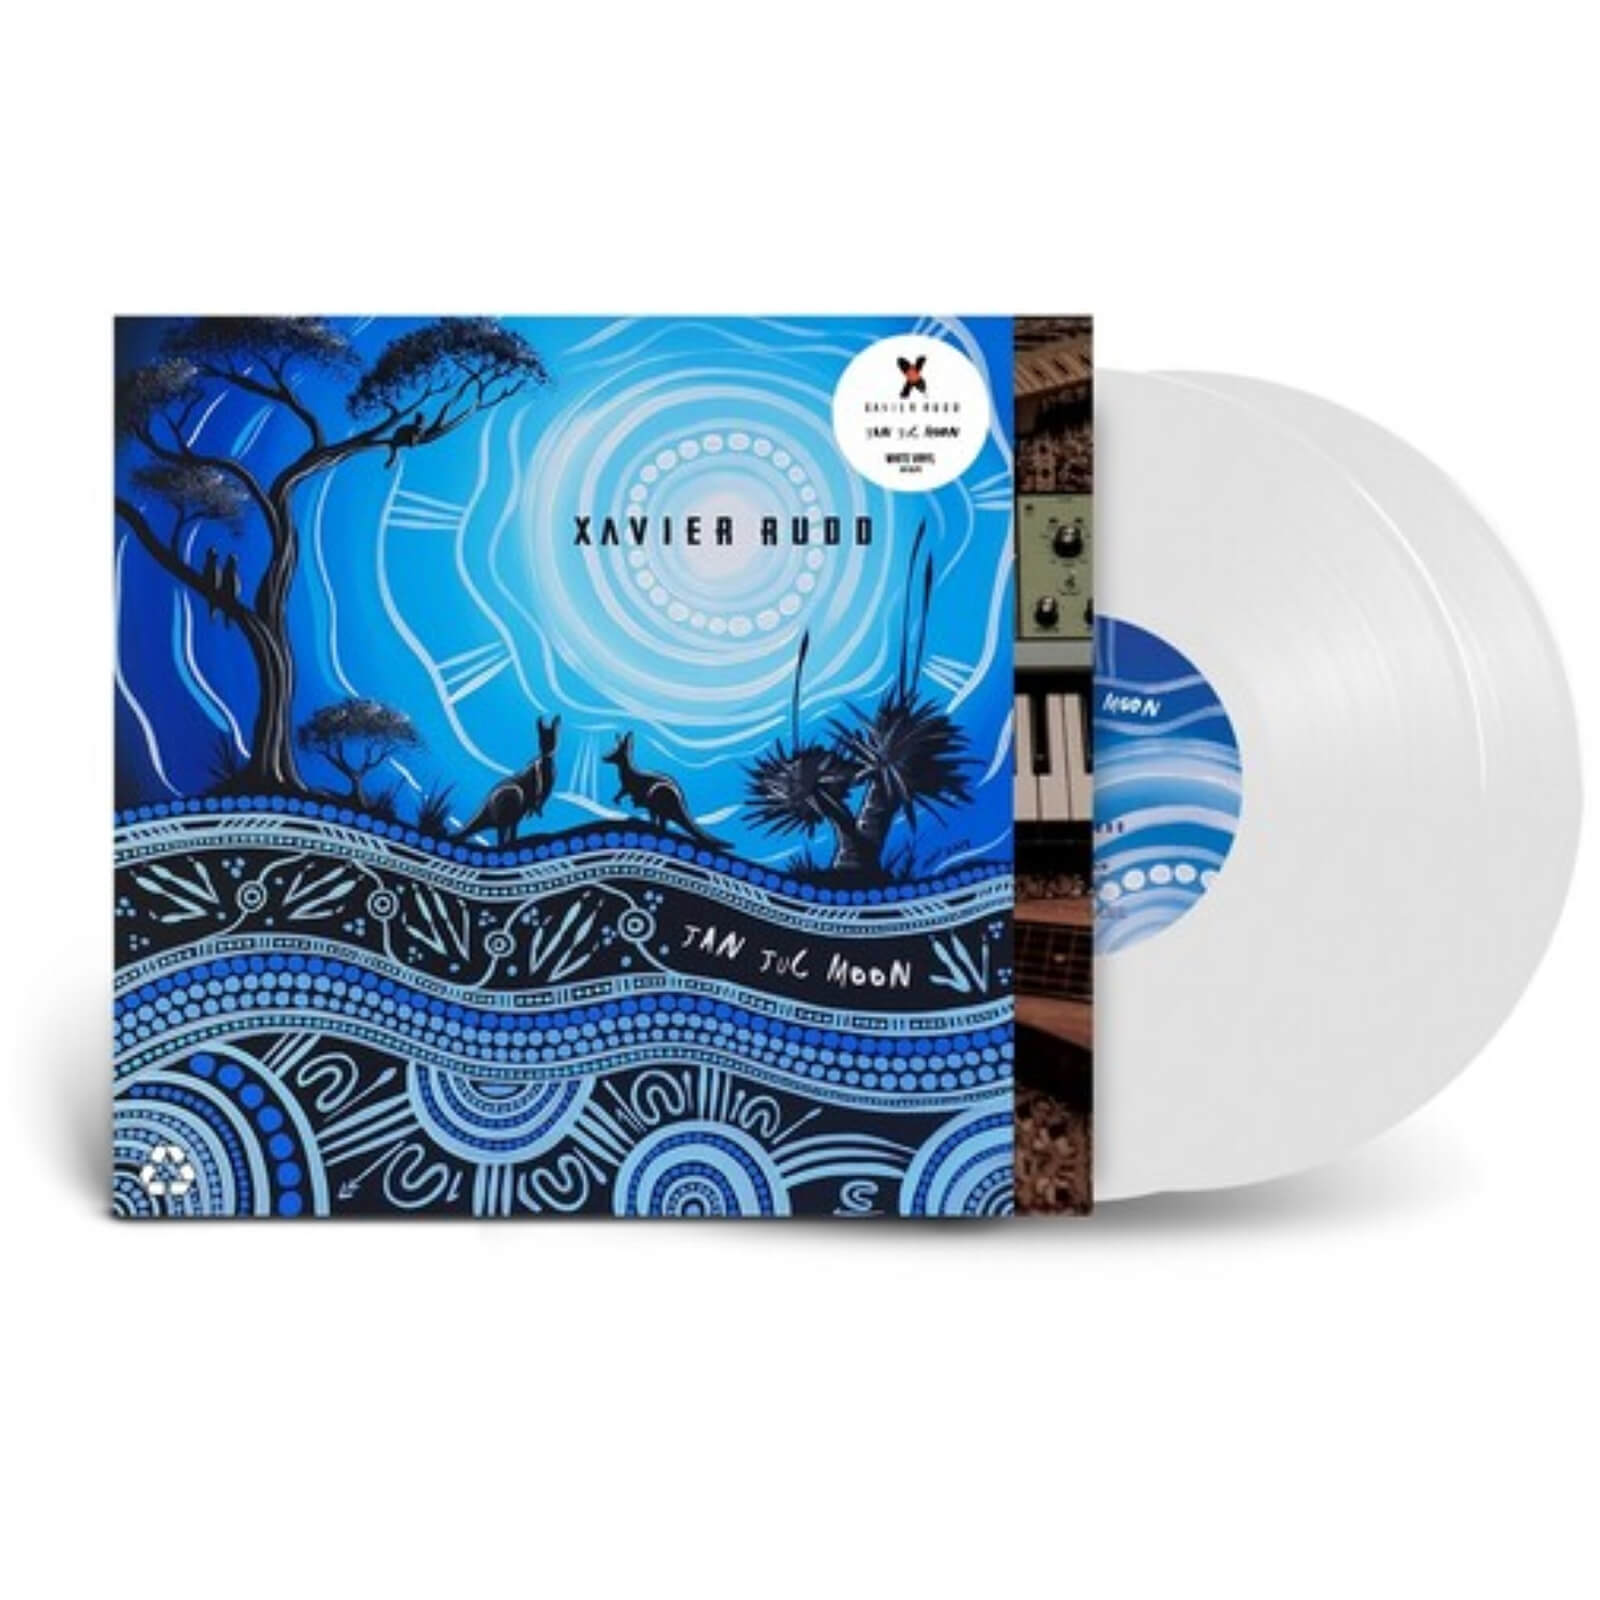 Xavier Rudd - Jan Juc Moon Vinyl (White)